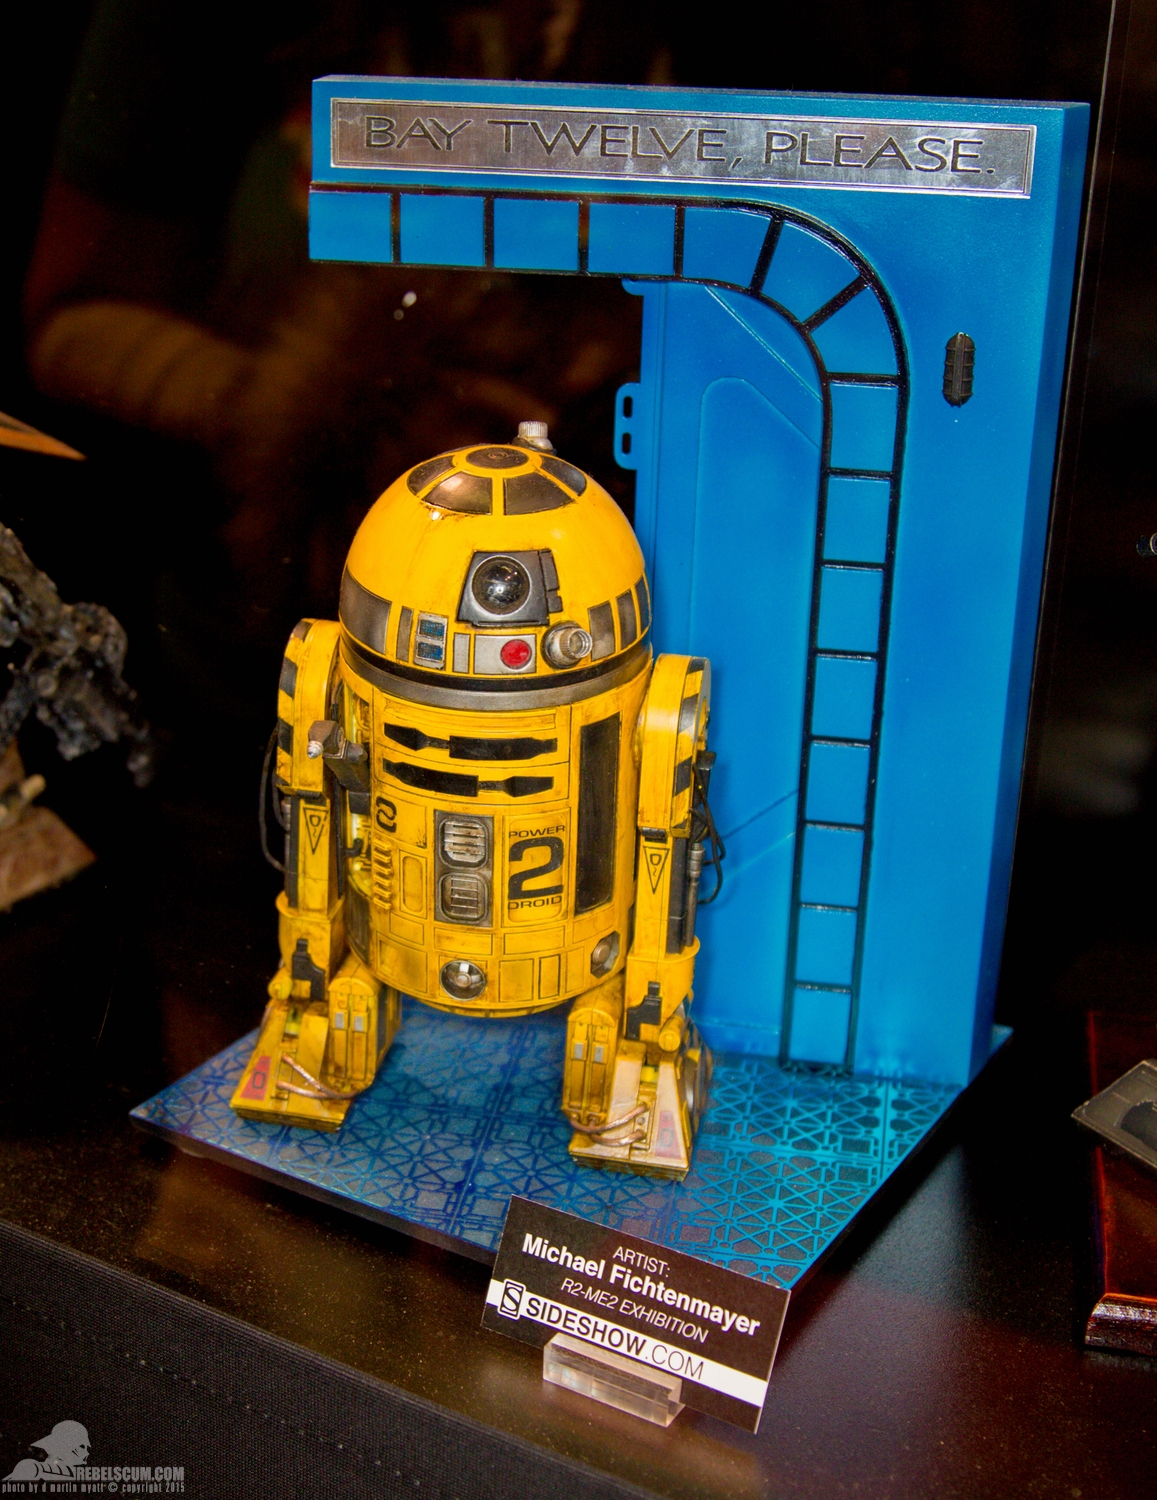 Star-Wars-Celebration-Anaheim-2015-Sideshow-R2-Me2-Exhibit-016.jpg